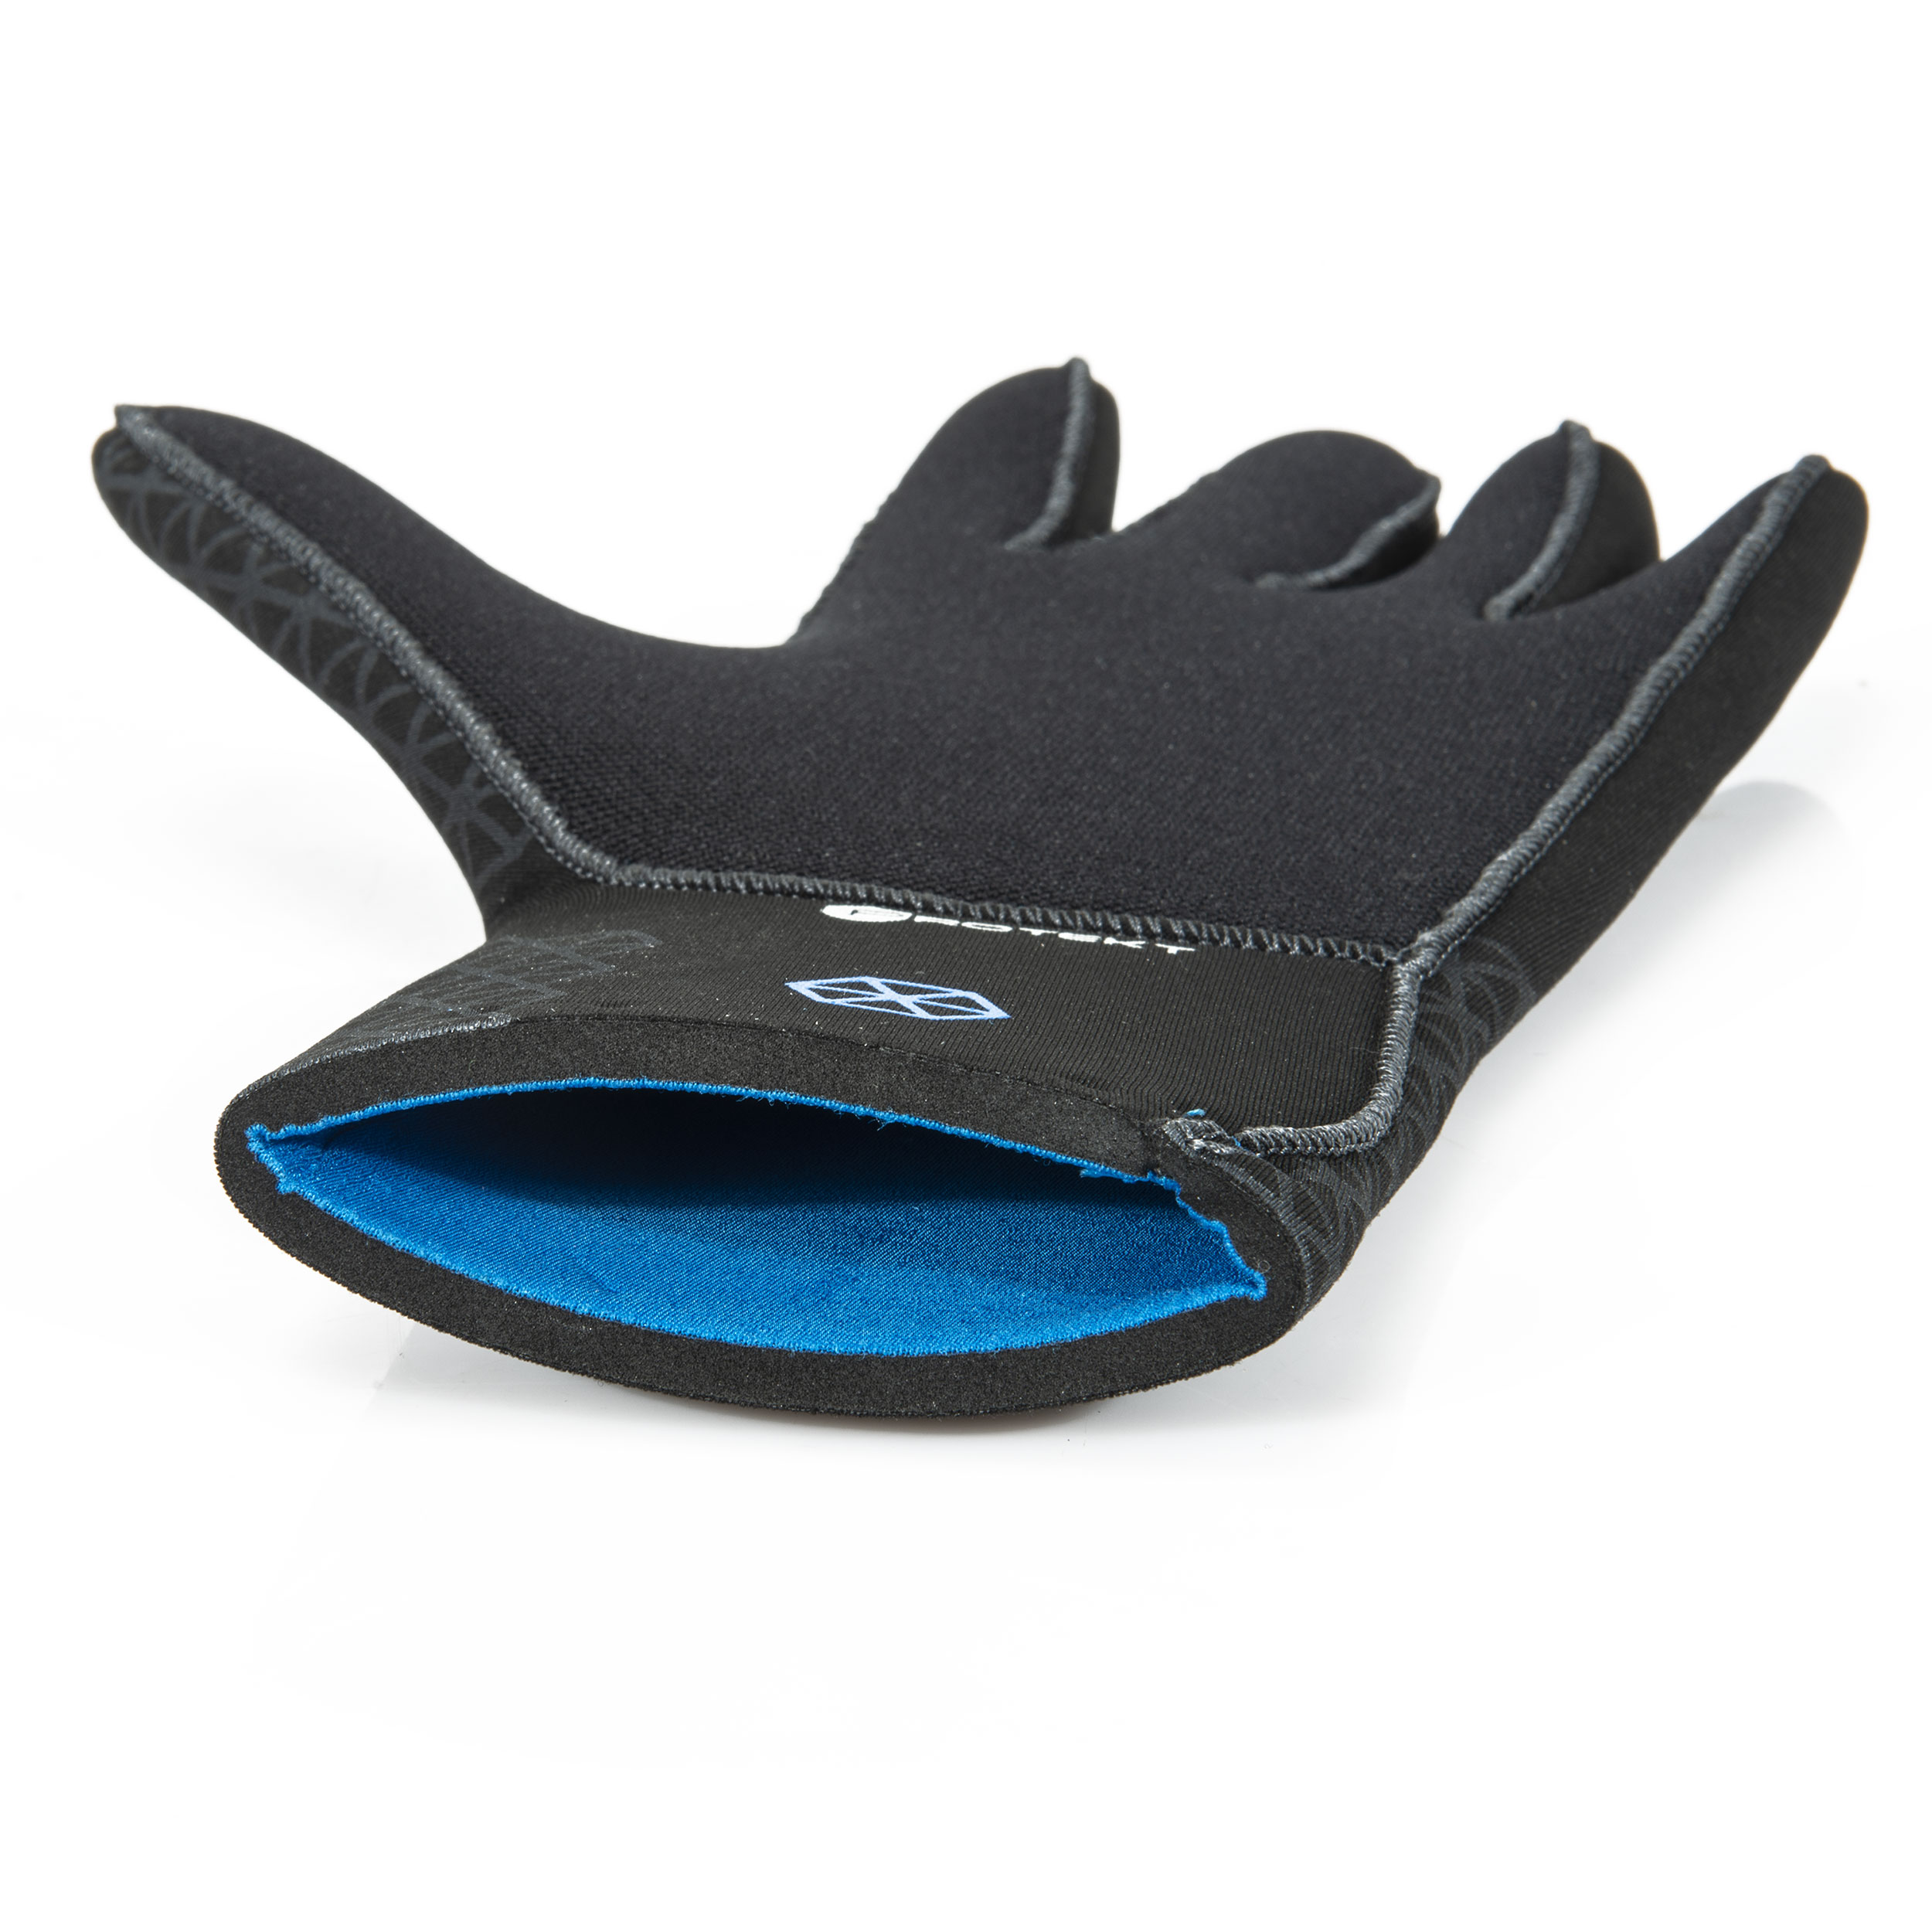 S 3 mm ScubaTec Handschuhe Neoprenhandschuhe mit Klettverschluß Gr 